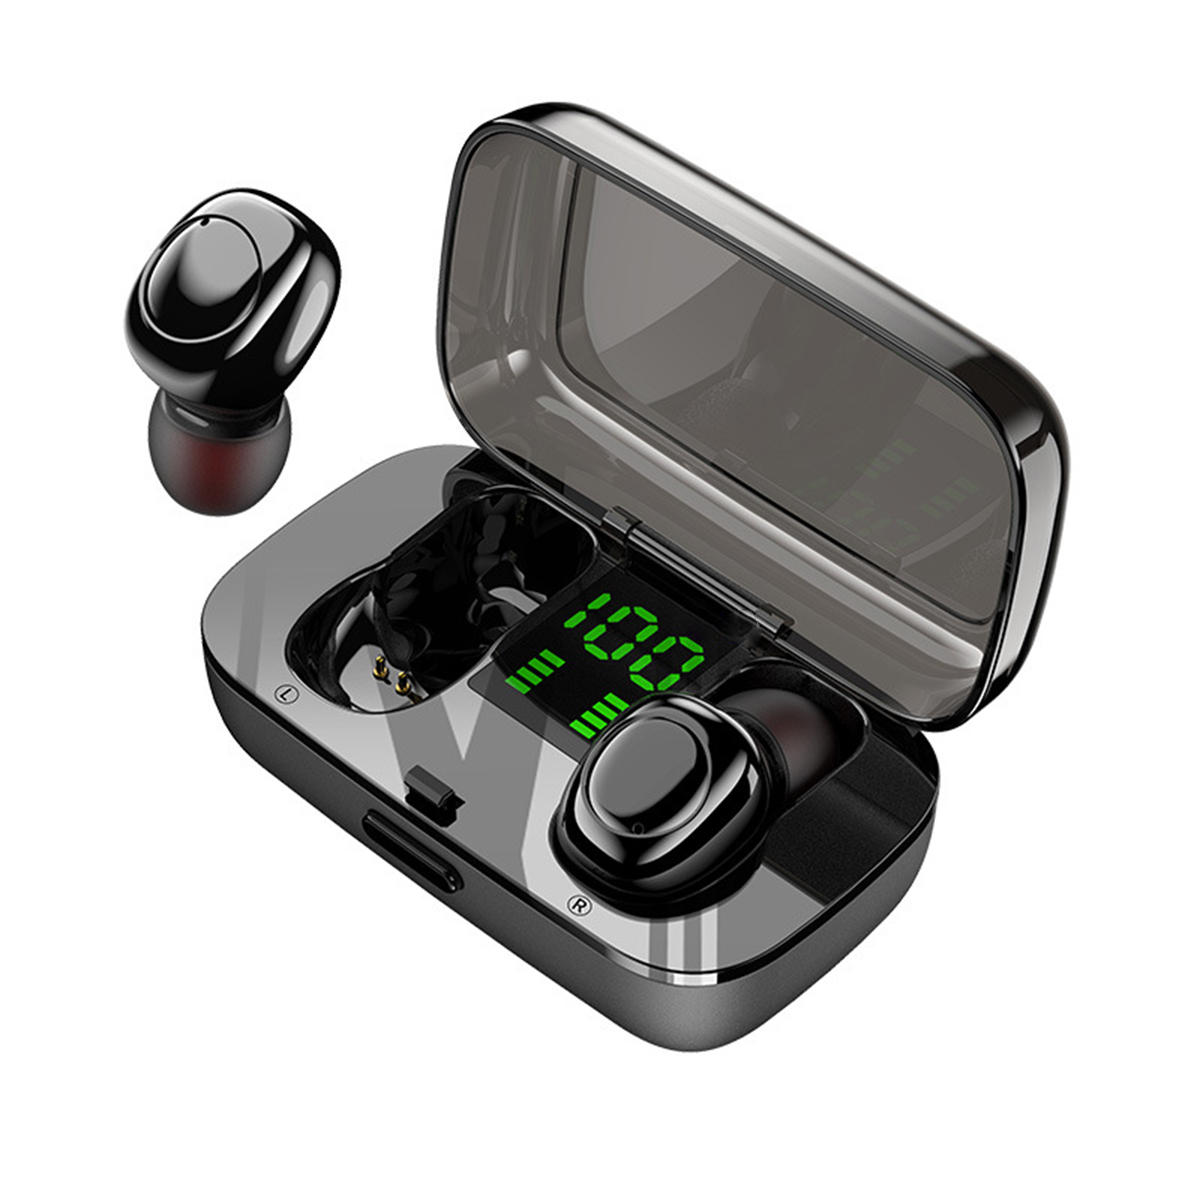 TWS Mini Bluetooth portátil 5.0 Auricular Auriculares estéreo inteligentes táctiles con carga Caja